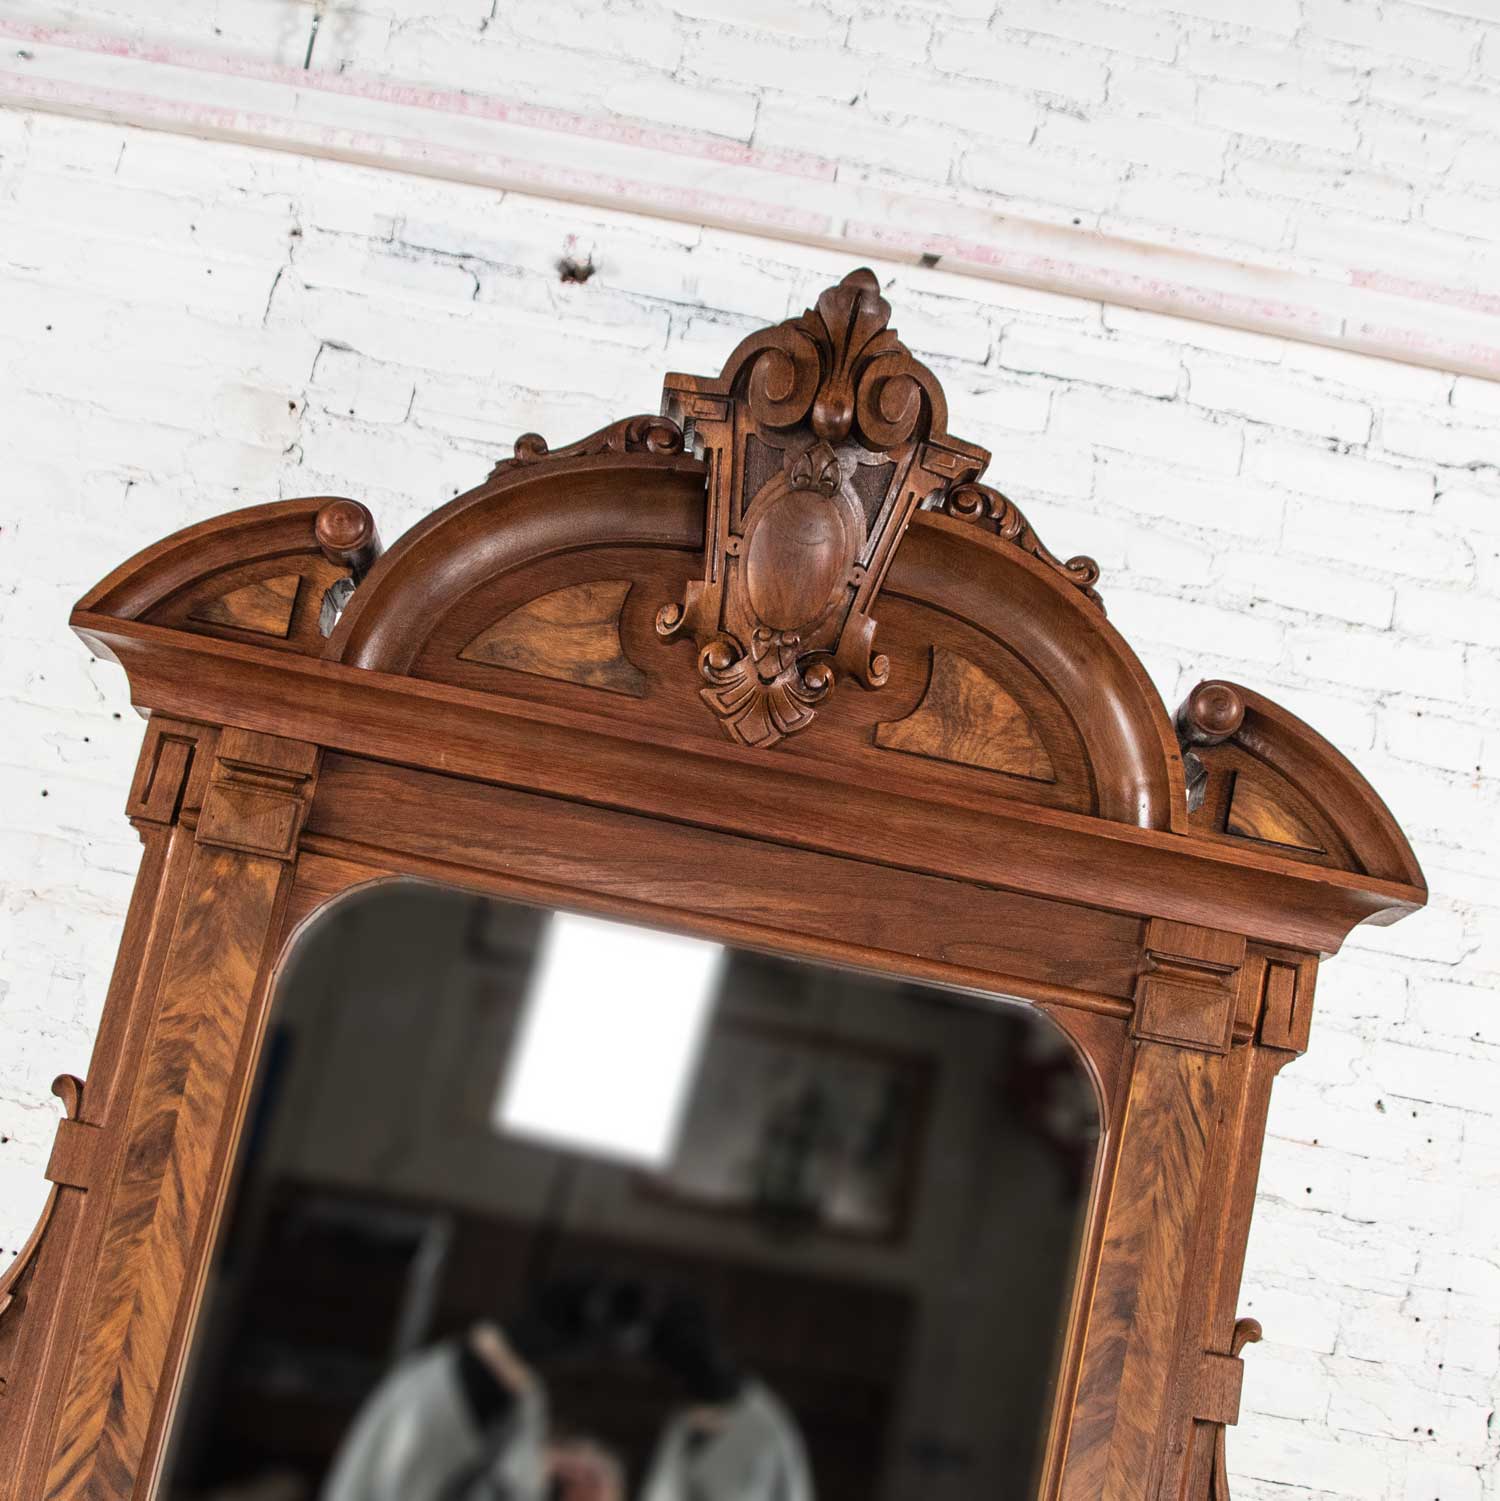 Antique Victorian Mirrored Dresser in Walnut & Burl Walnut with White Marble Top